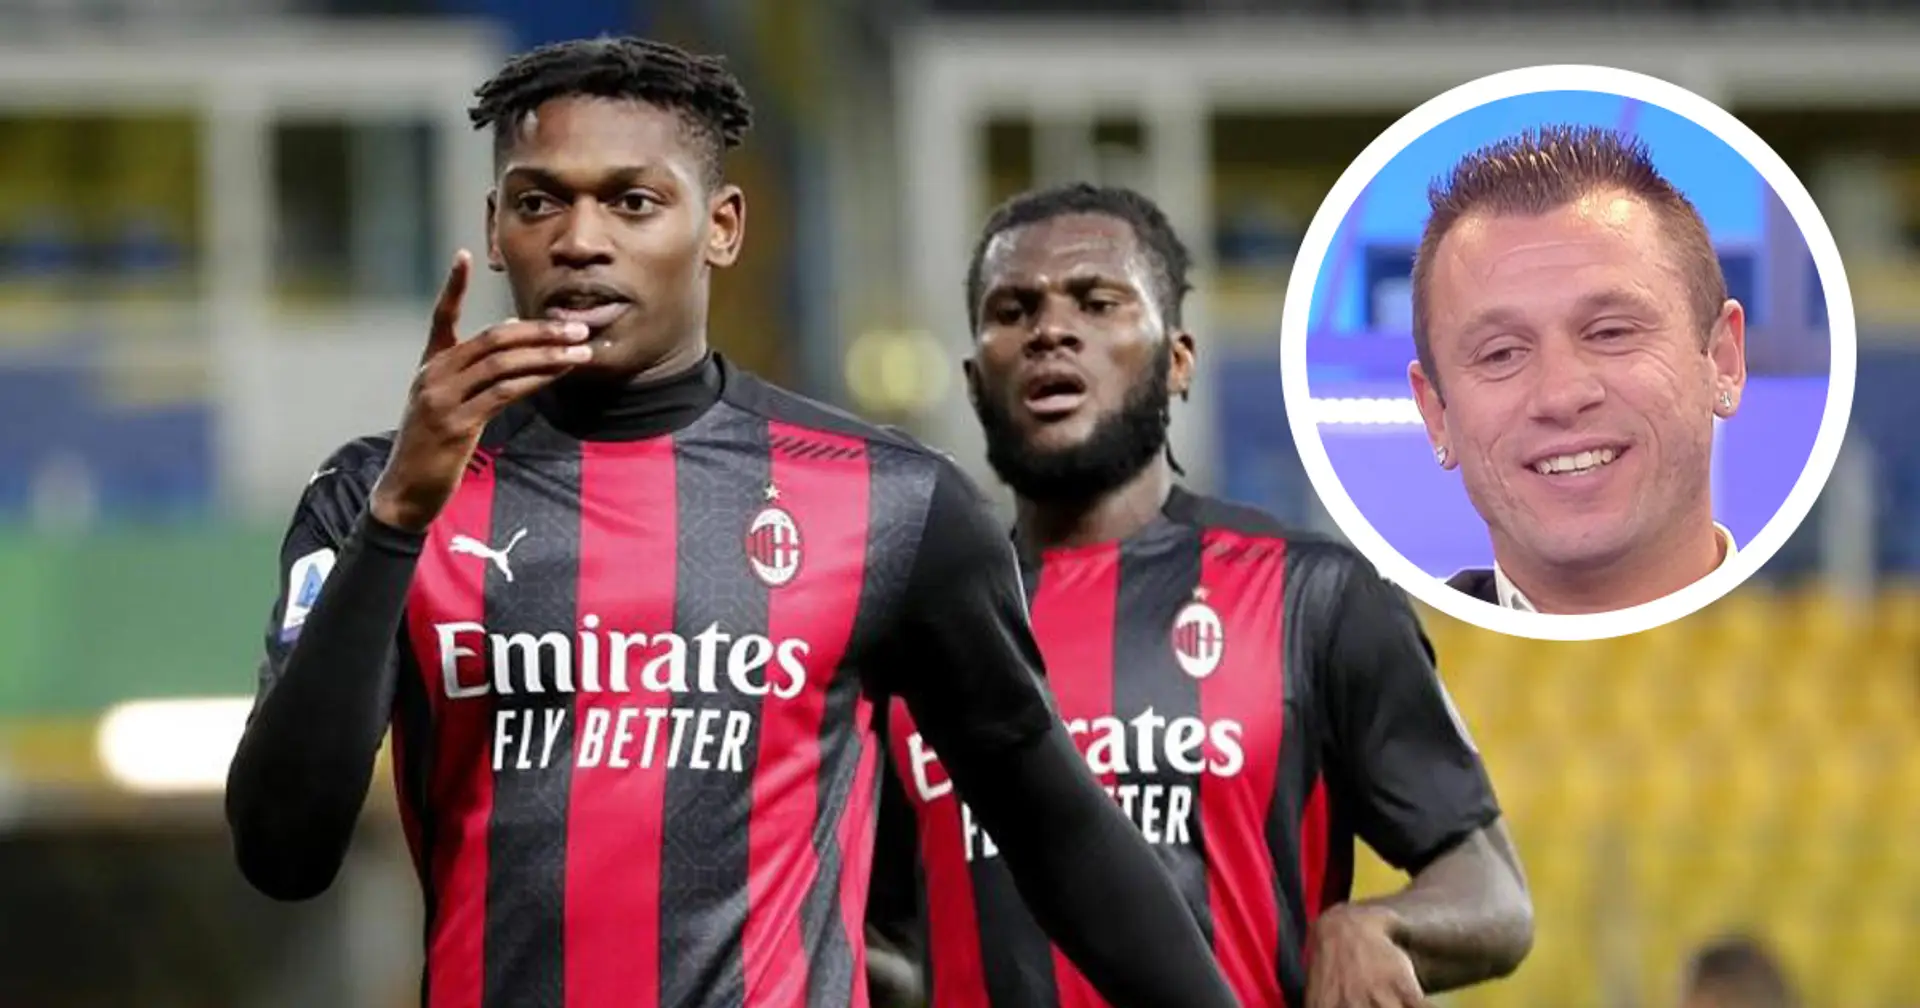 "Il Milan sta emozionando, anche senza fenomeni continuano ad essere squadra": Cassano loda i rossoneri